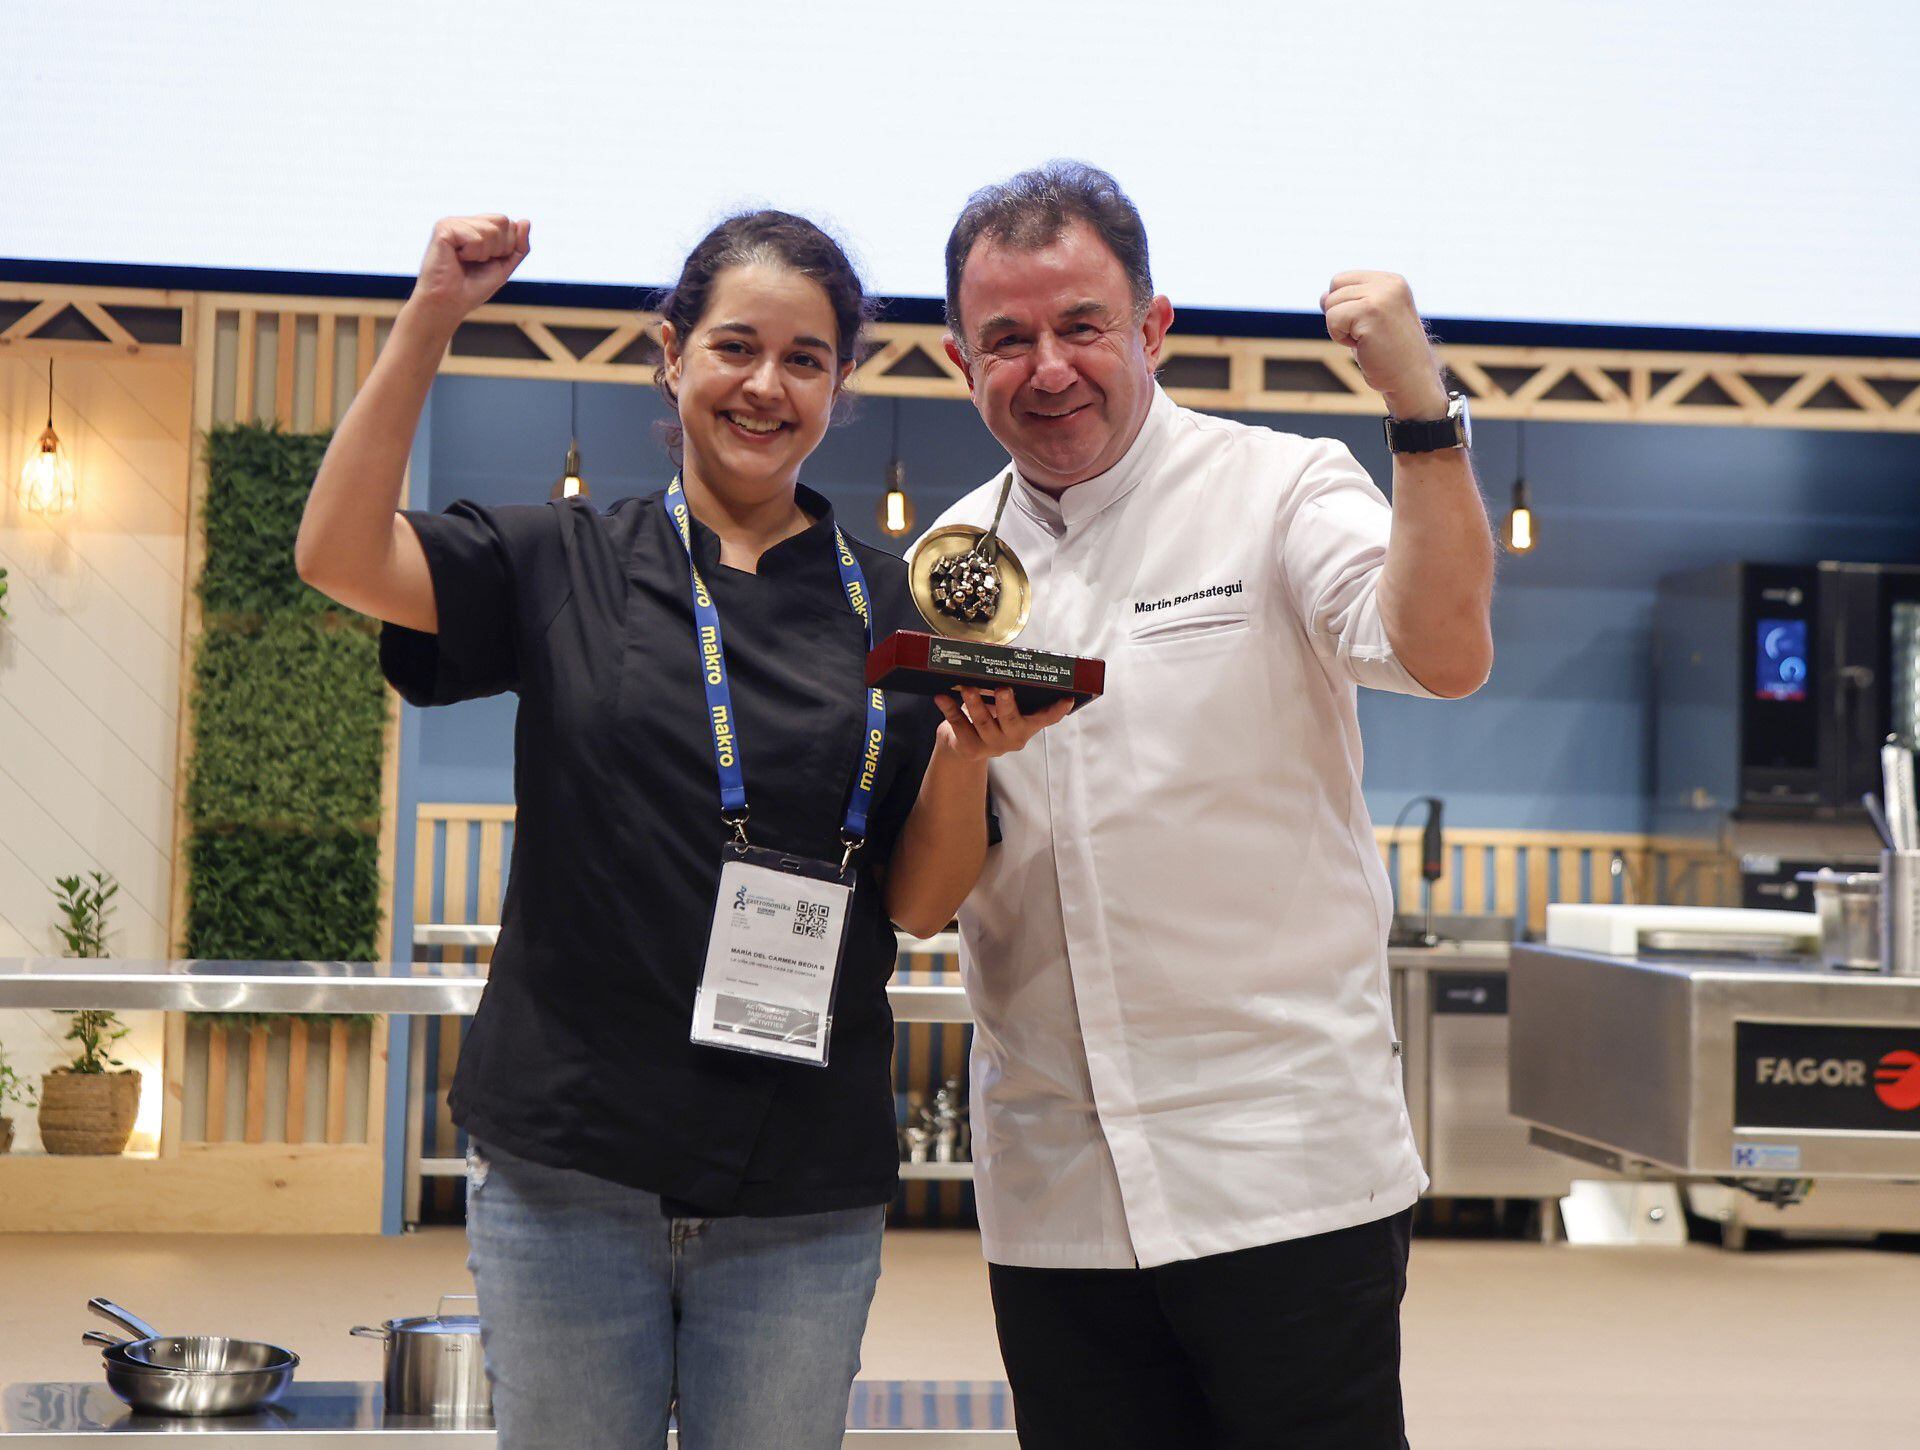 La ganadora del concurso, la cocinera María del Carmen Bedia, con el presidente del jurado, Martín Berasategui. Imagen proporcionada por la organización.